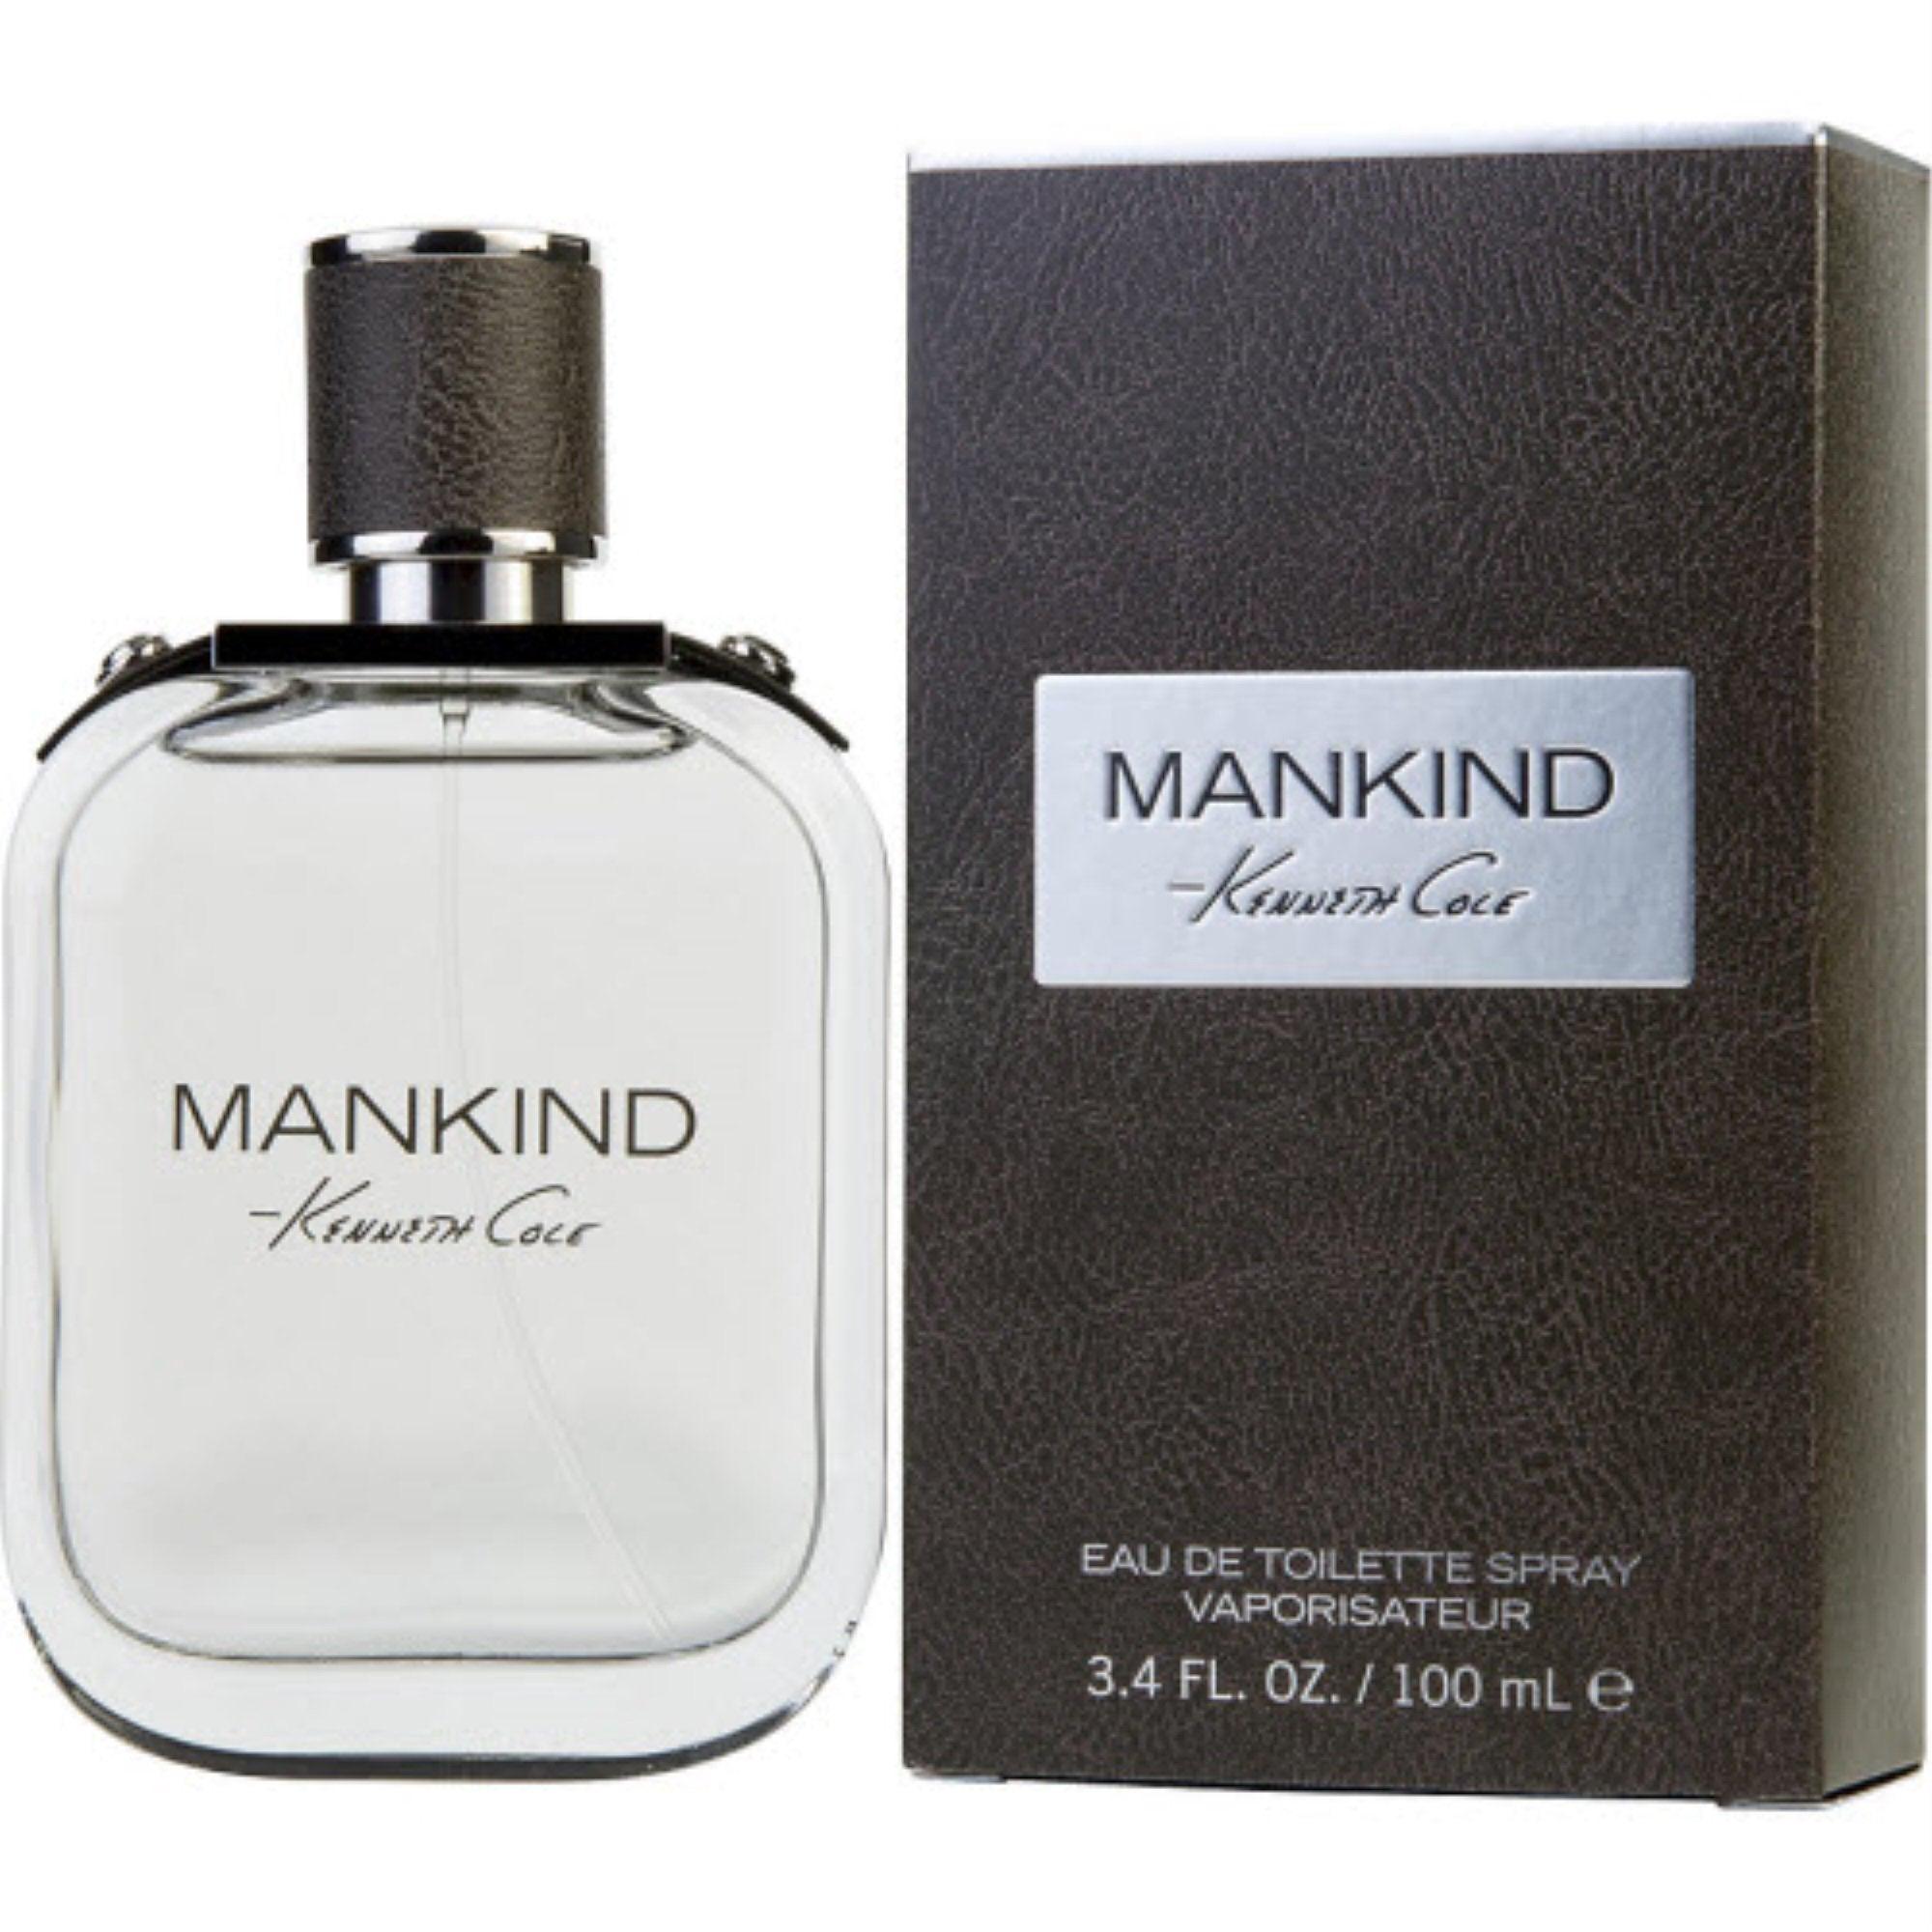 KENNETH COLE MANKIND - Parfum Gallerie